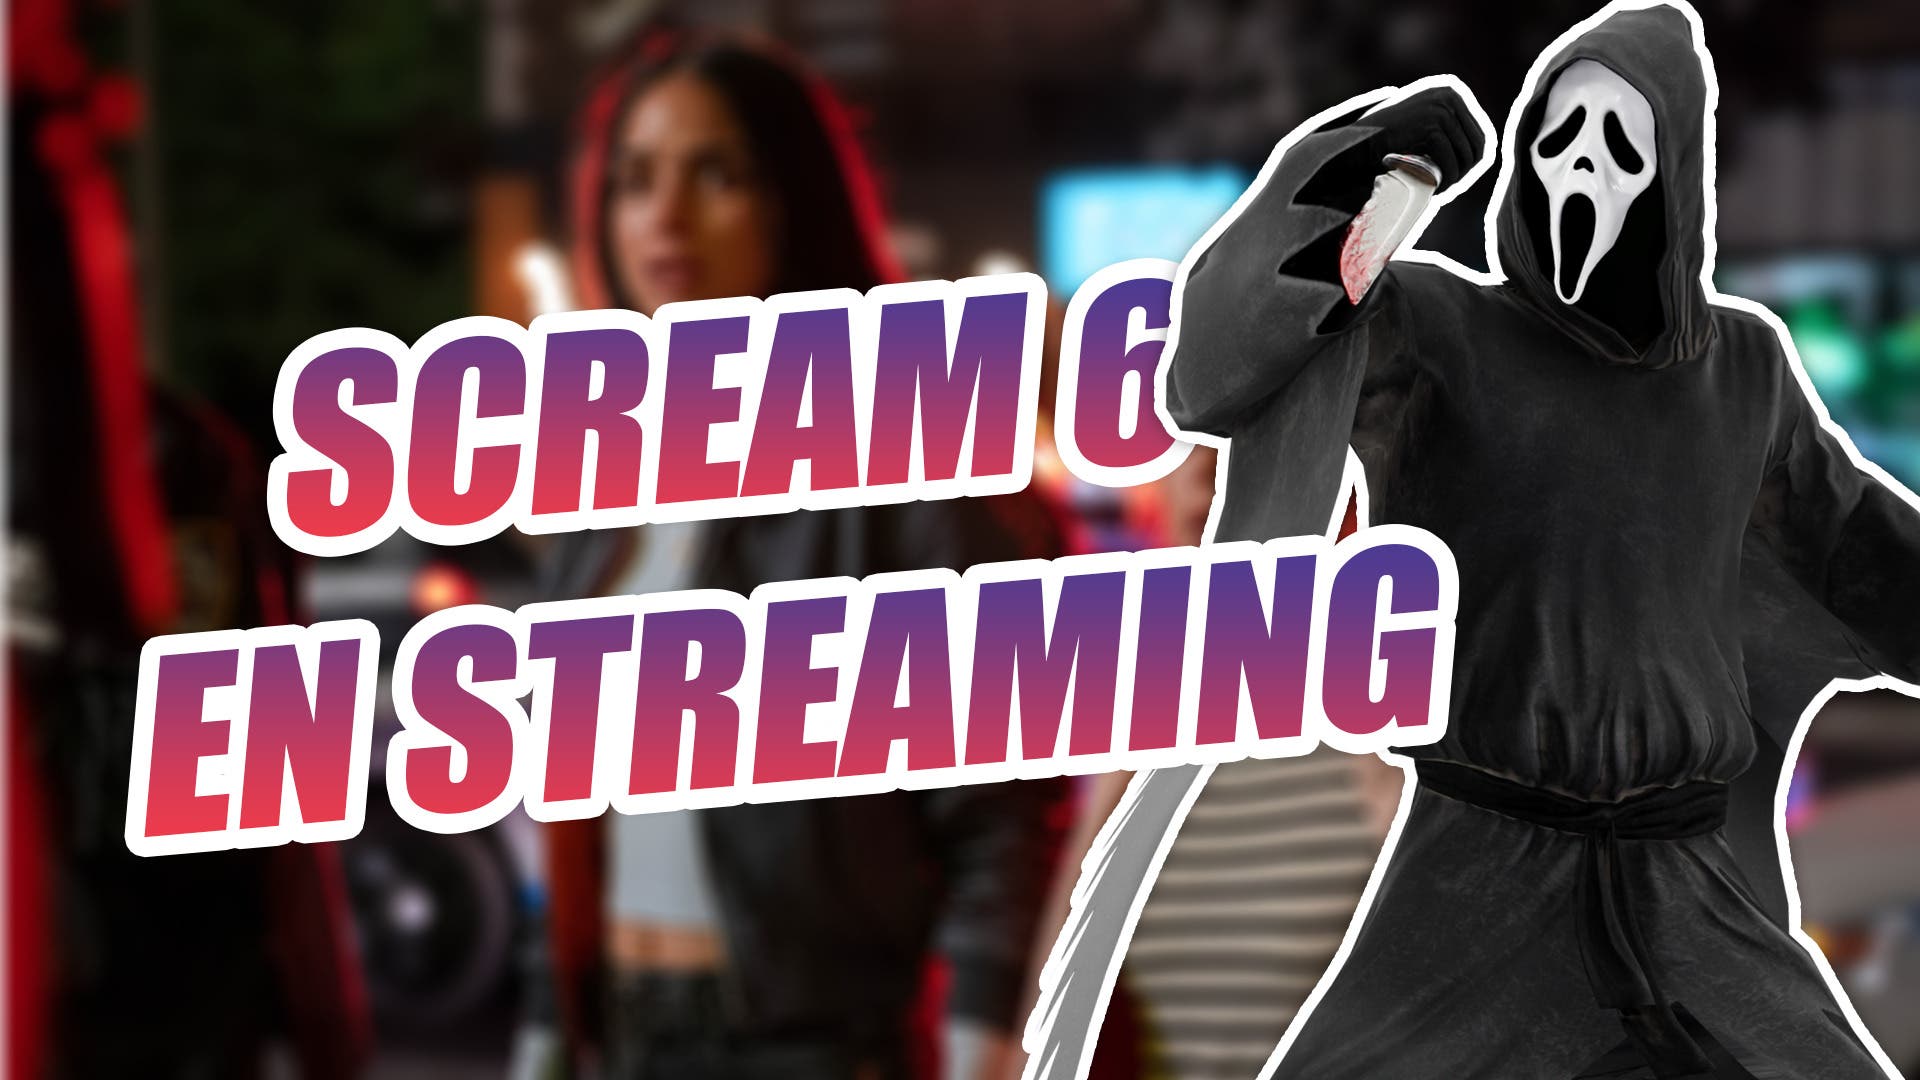 When can you stream Scream 6?